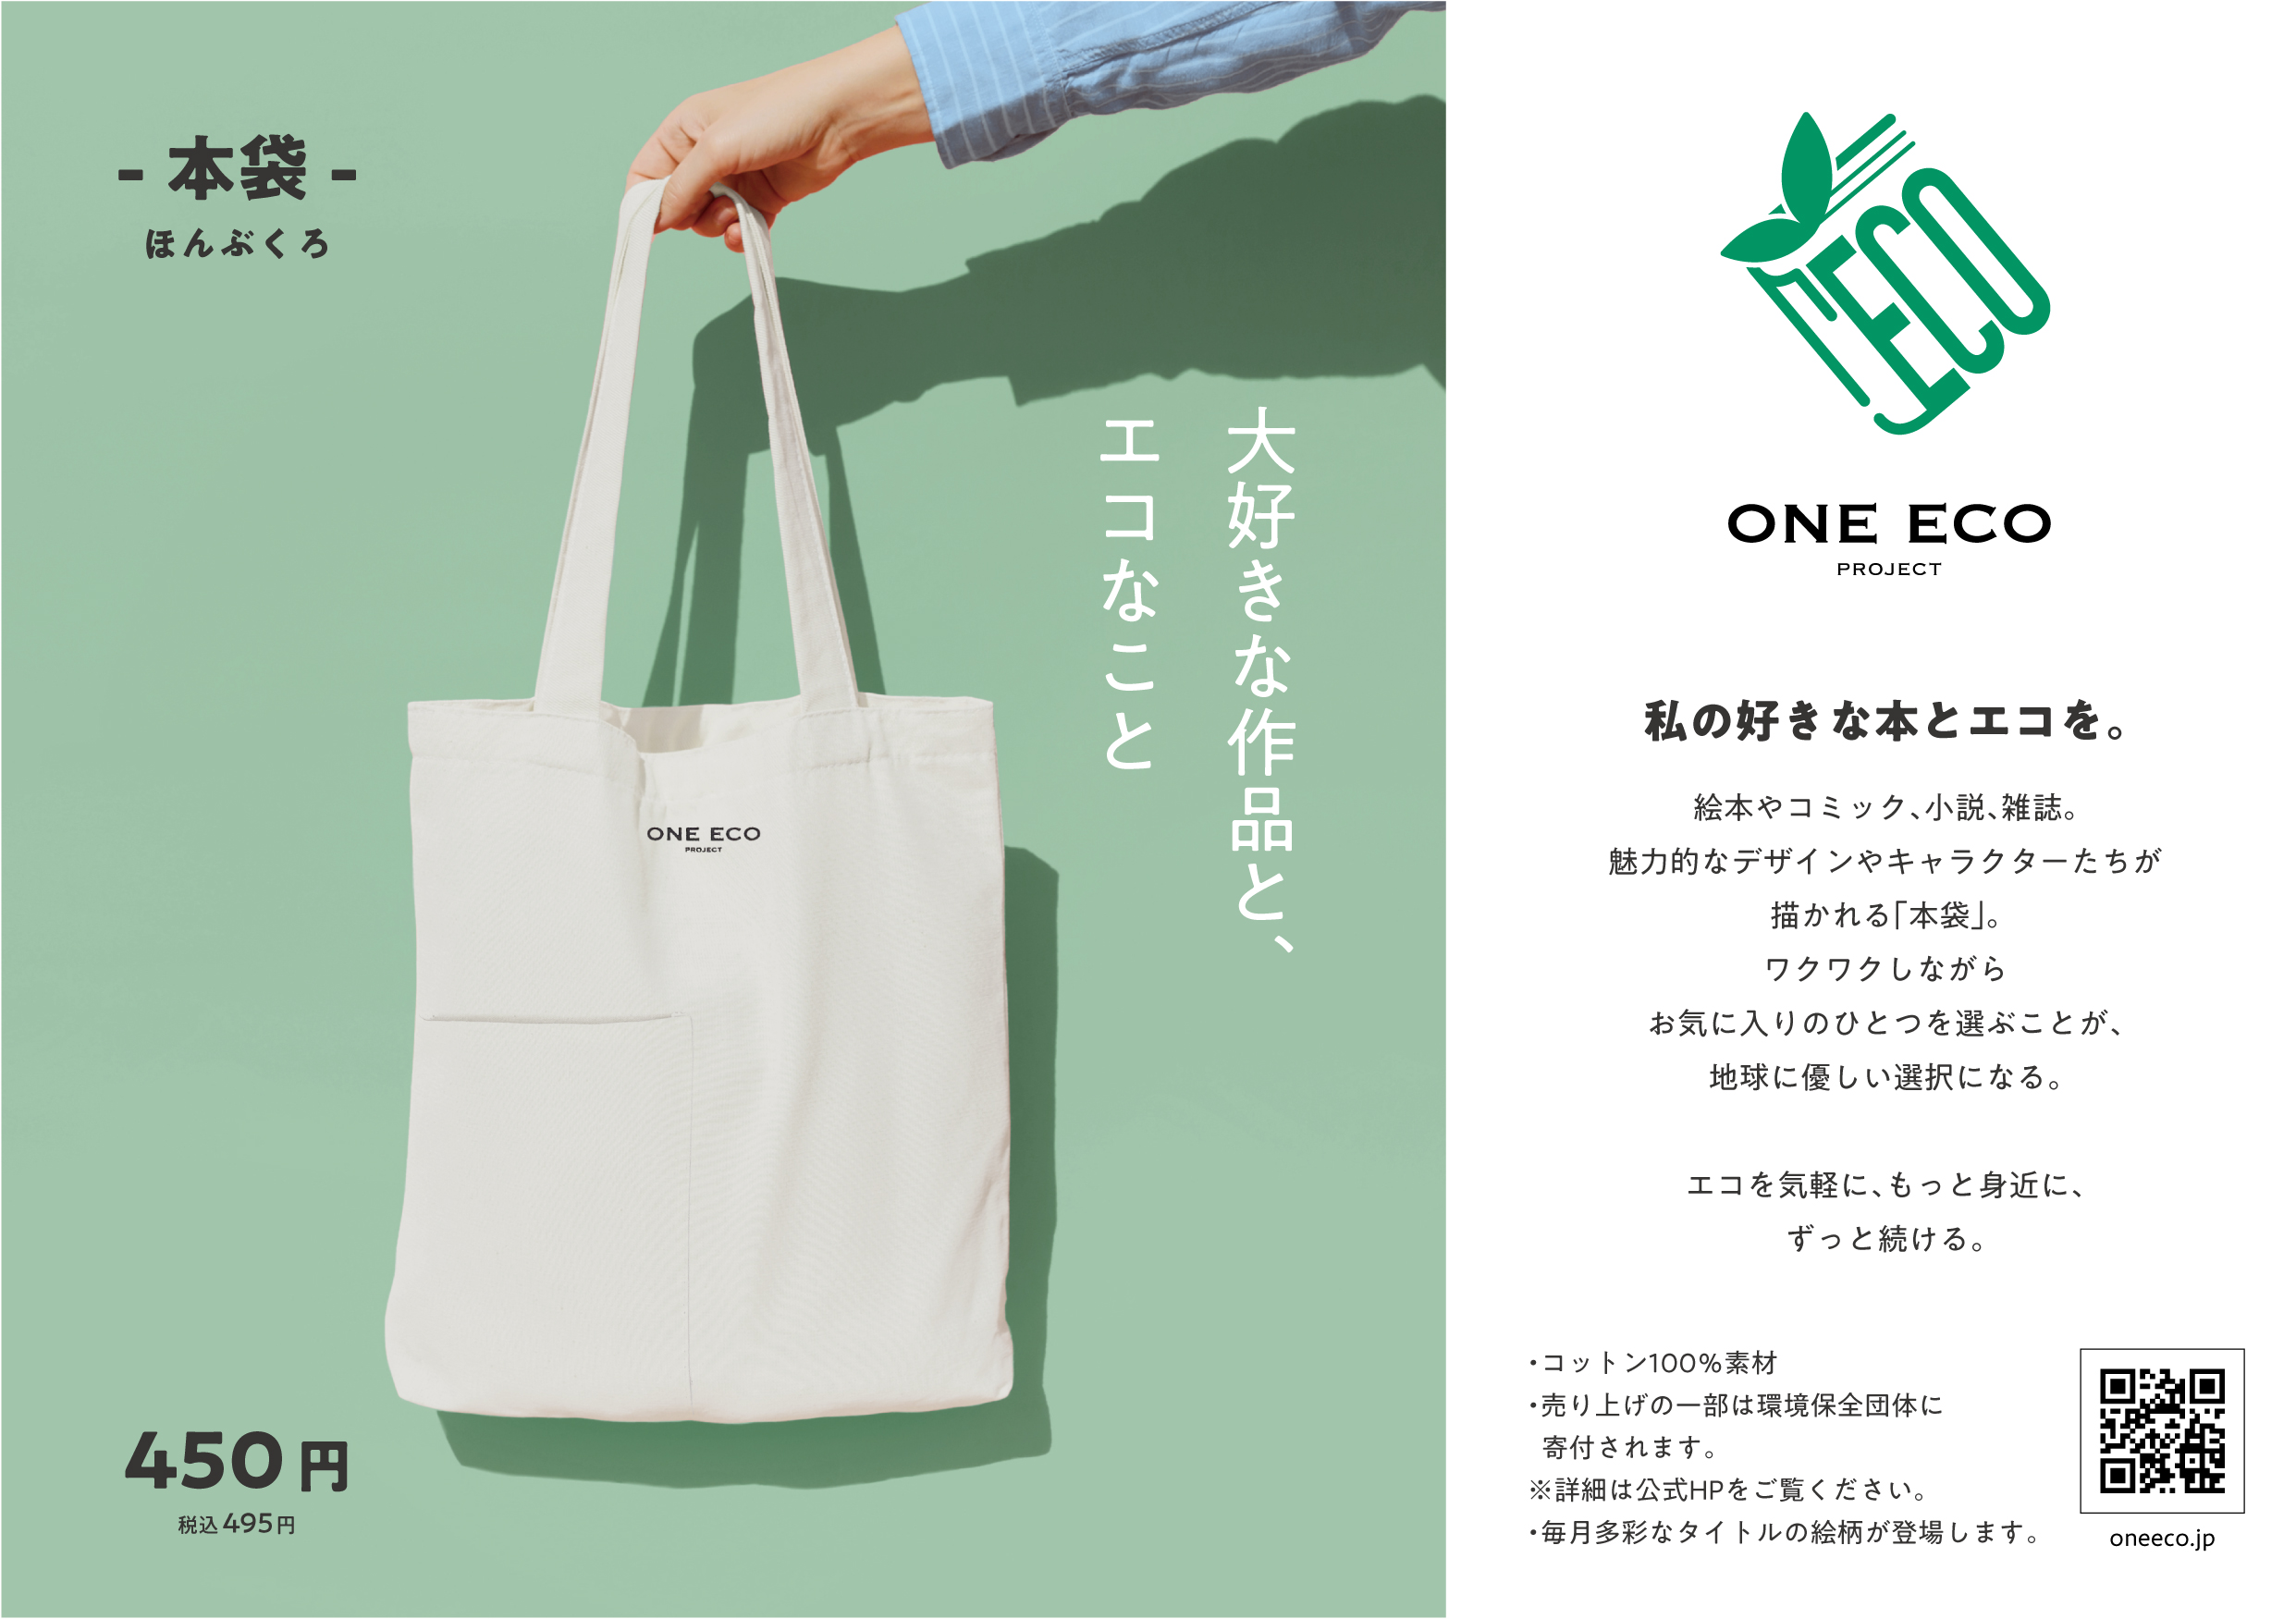 エコをより身近なものに 出版業界から発信する One Eco Project 第一弾プロダクト 本袋 販売開始 日本出版販売株式会社のプレスリリース